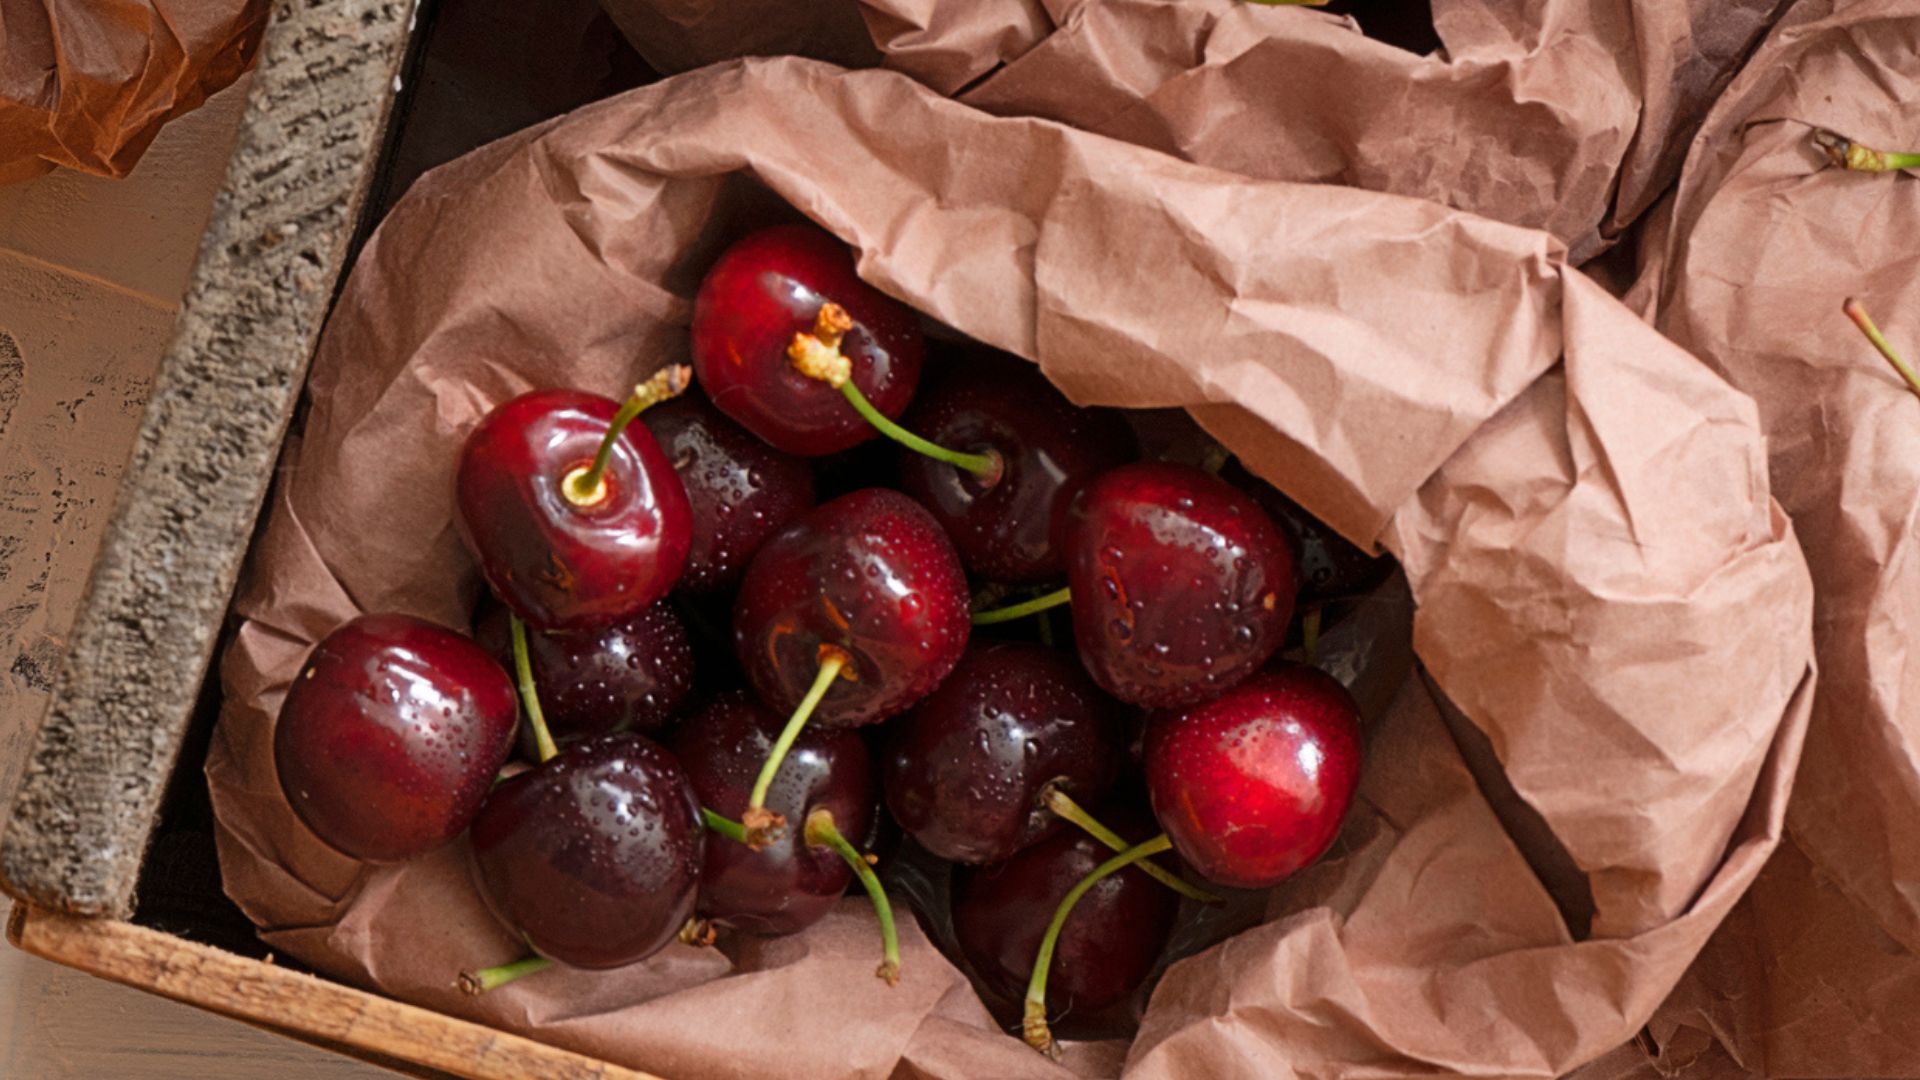 Brown bag of cherries